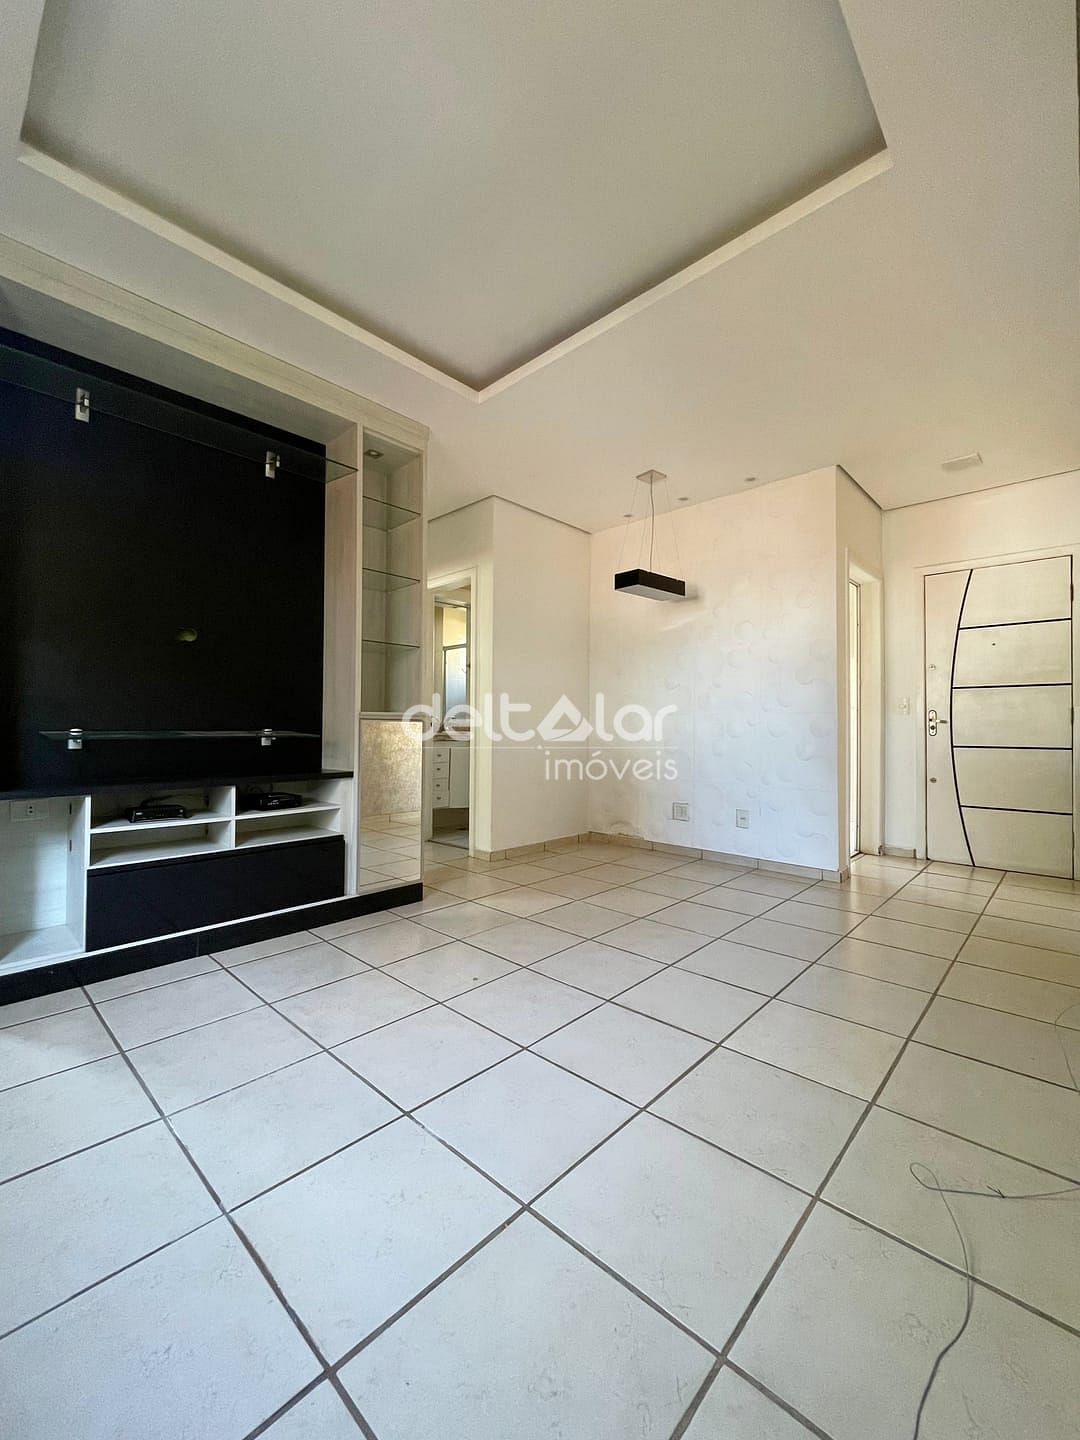 Apartamento em Planalto, Belo Horizonte/MG de 55m² 2 quartos para locação R$ 1.257,00/mes